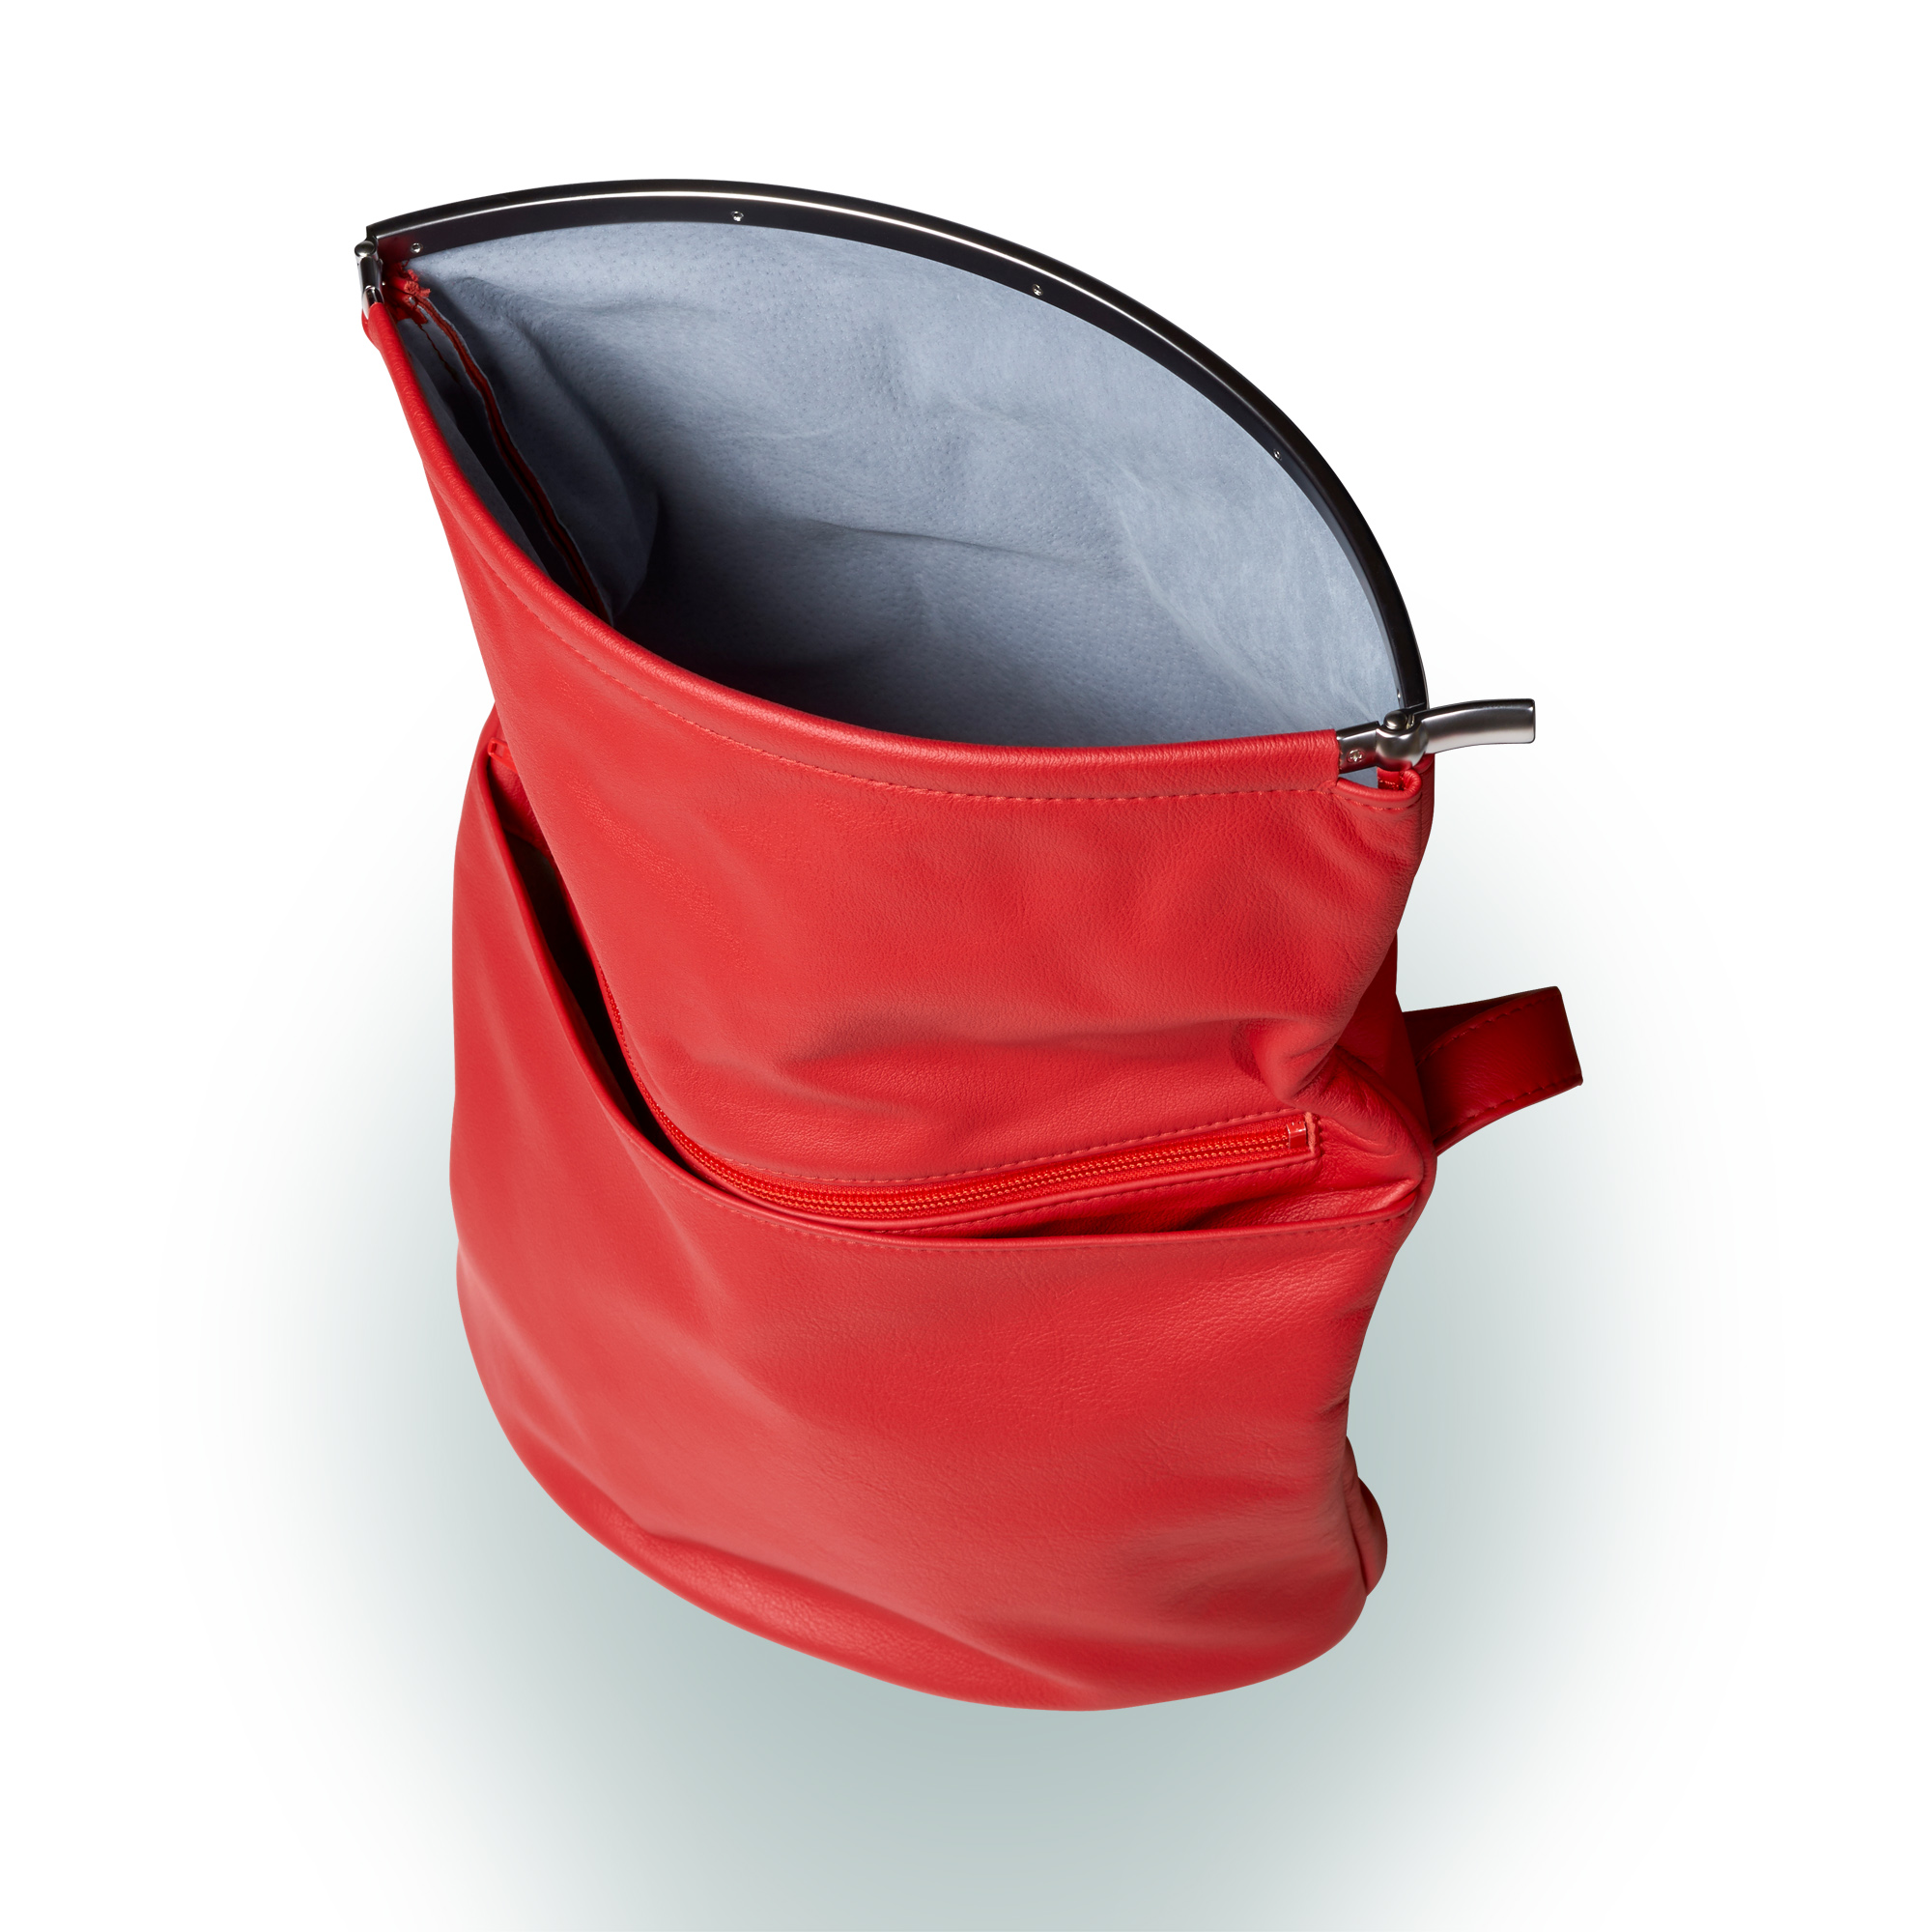 Olbrish Handtasche Wandelbar, Nappaleder Rot, Größe L, Offene Ansicht